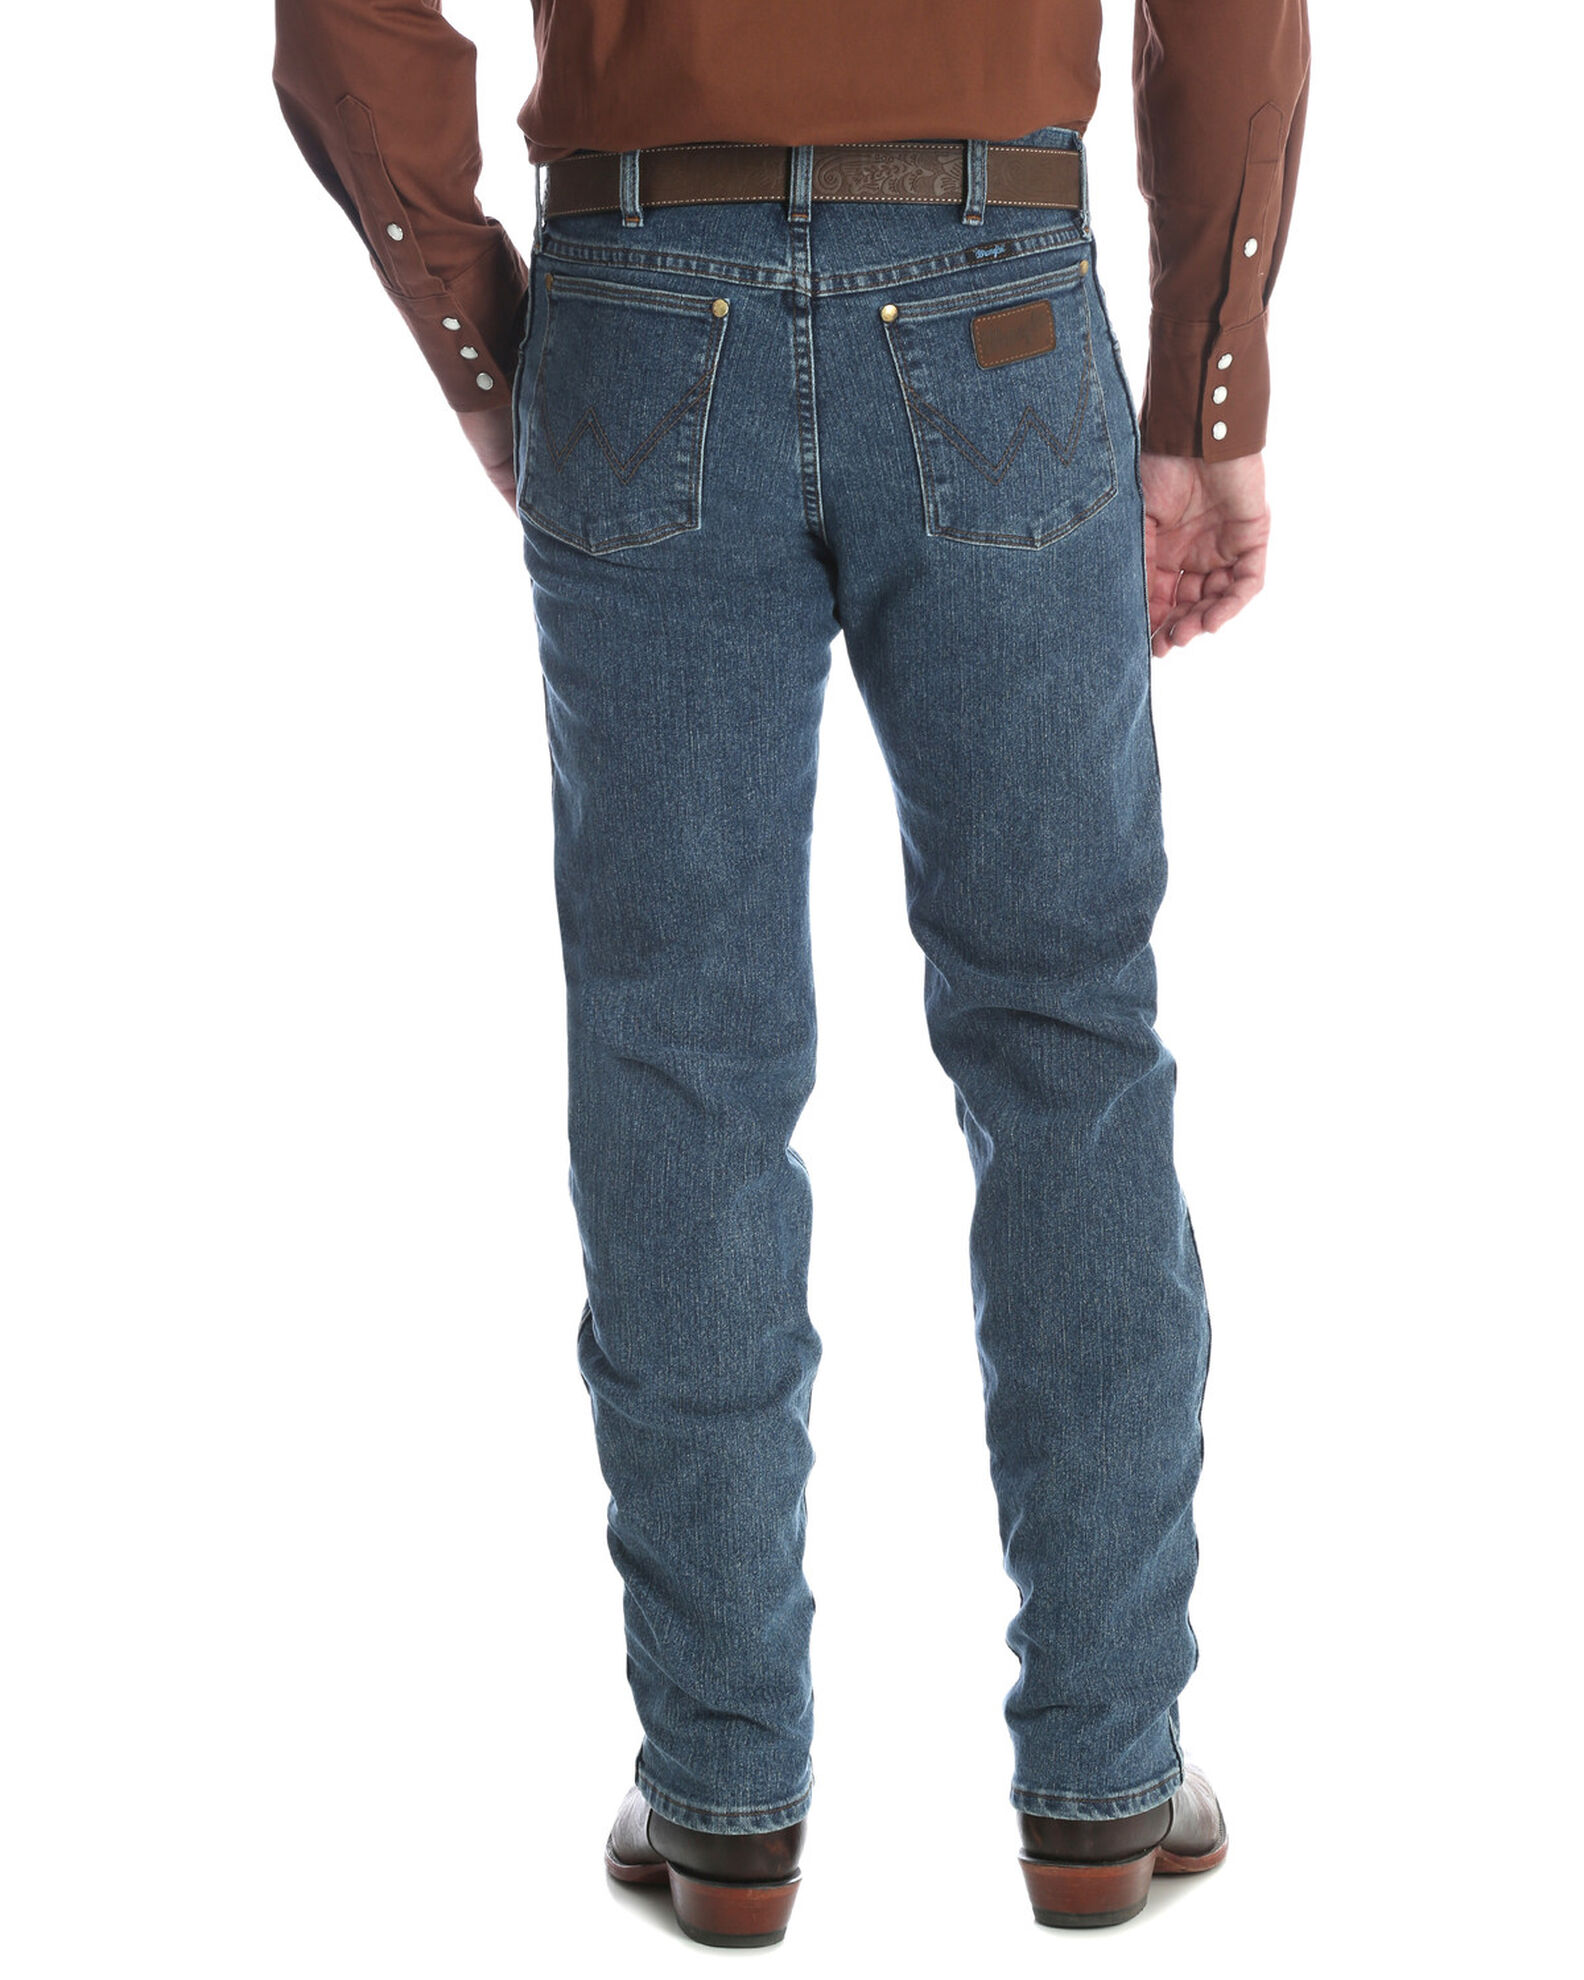 Introducir 45+ imagen cool vantage wrangler jeans